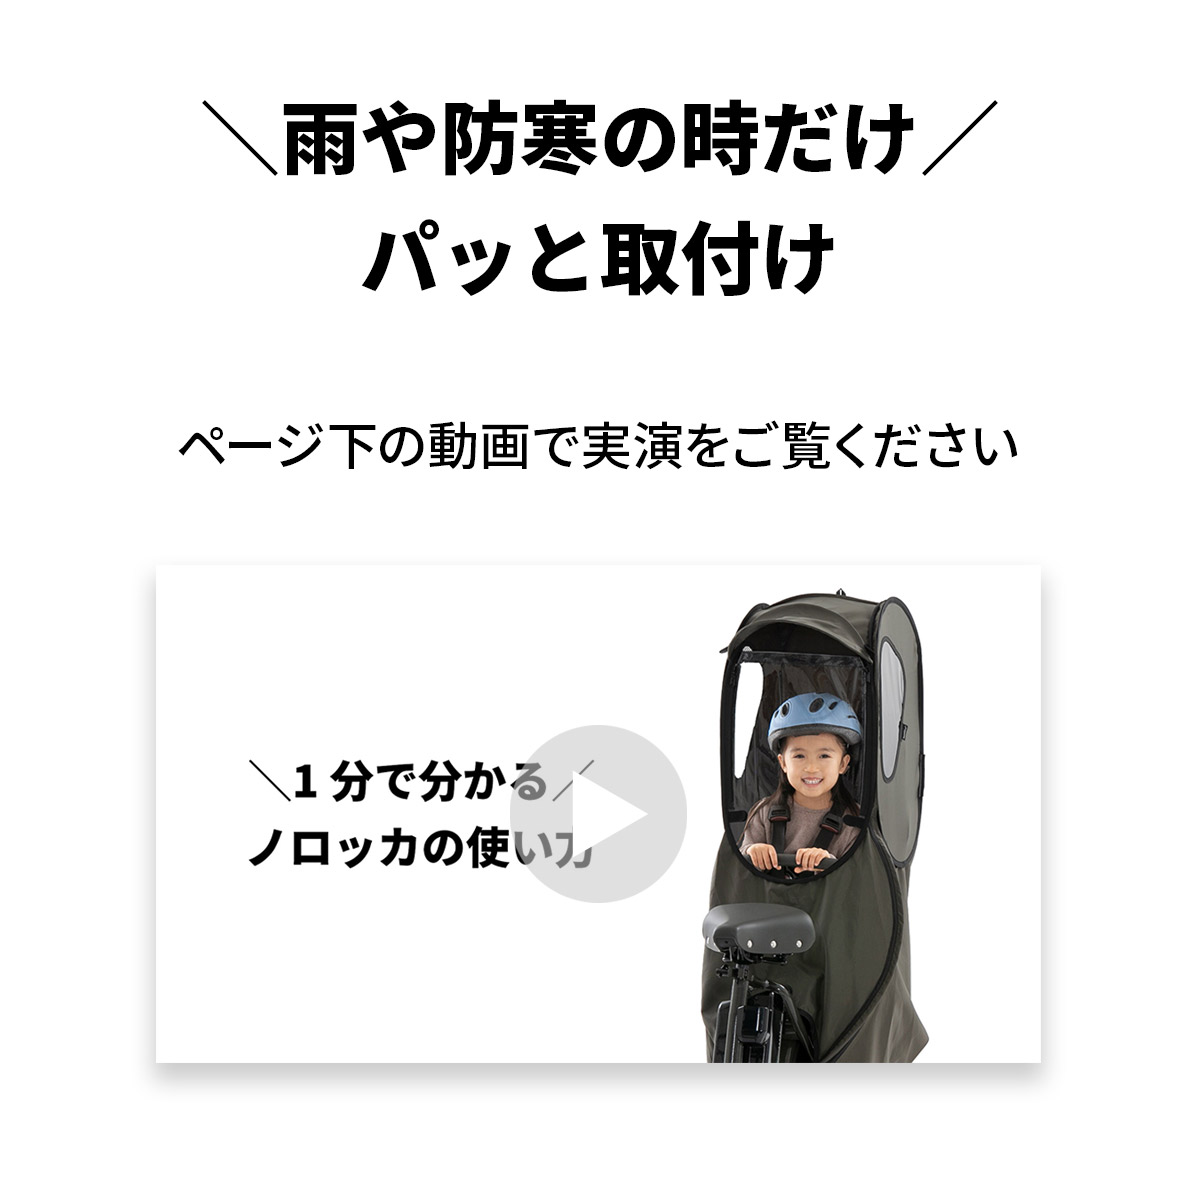 リア 国内メーカーシート用レインカバースタンダードモデル【送料無料 